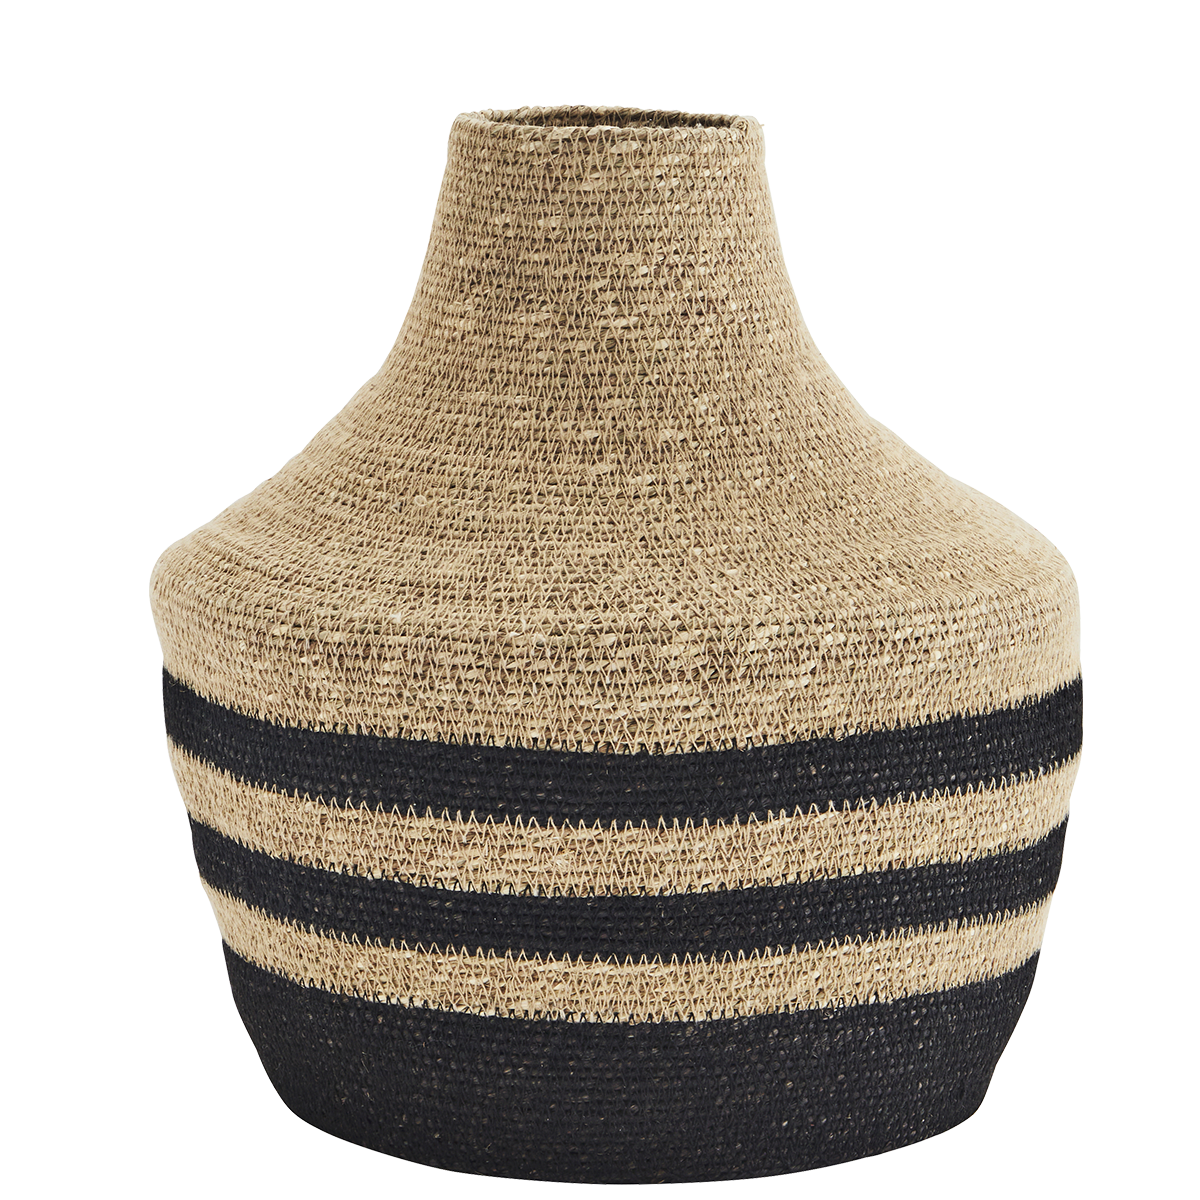 Seagrass vase w/ stitching